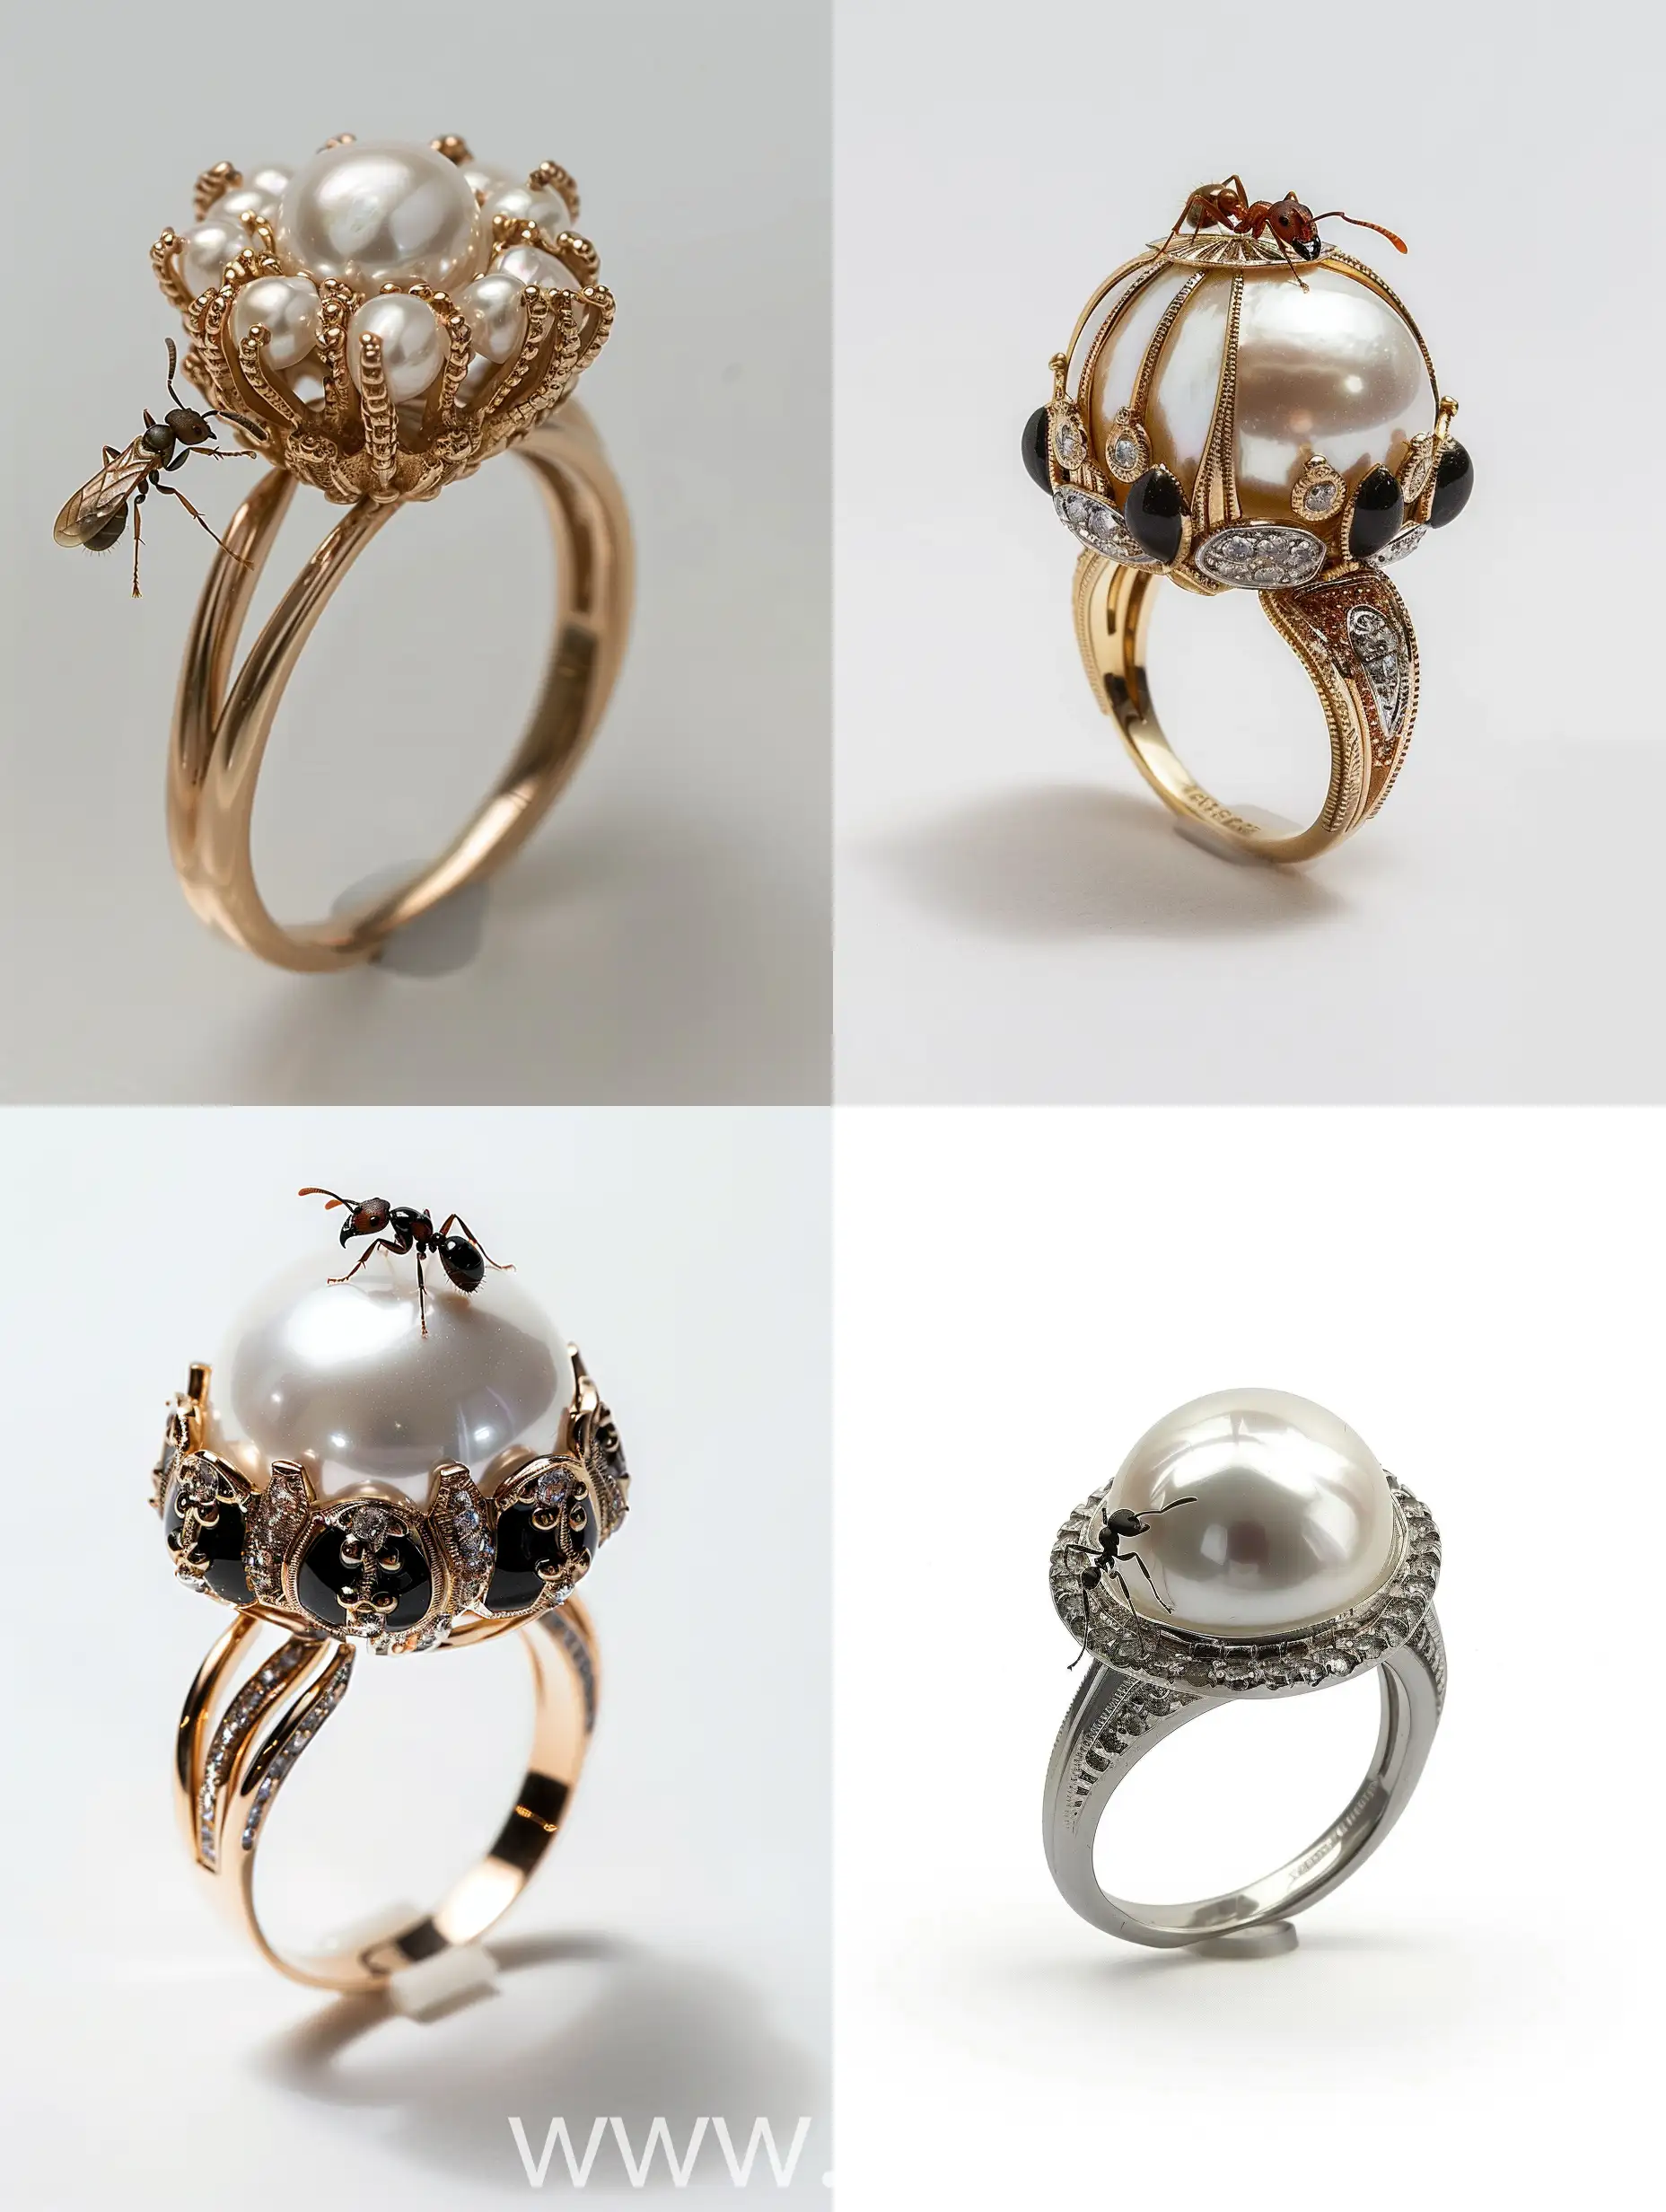 кольцо, ювелирное украшение, муравей на жемчужине, золото, платина, эмаль драгоценные камни фото реализм, много деталей, ,белый фон